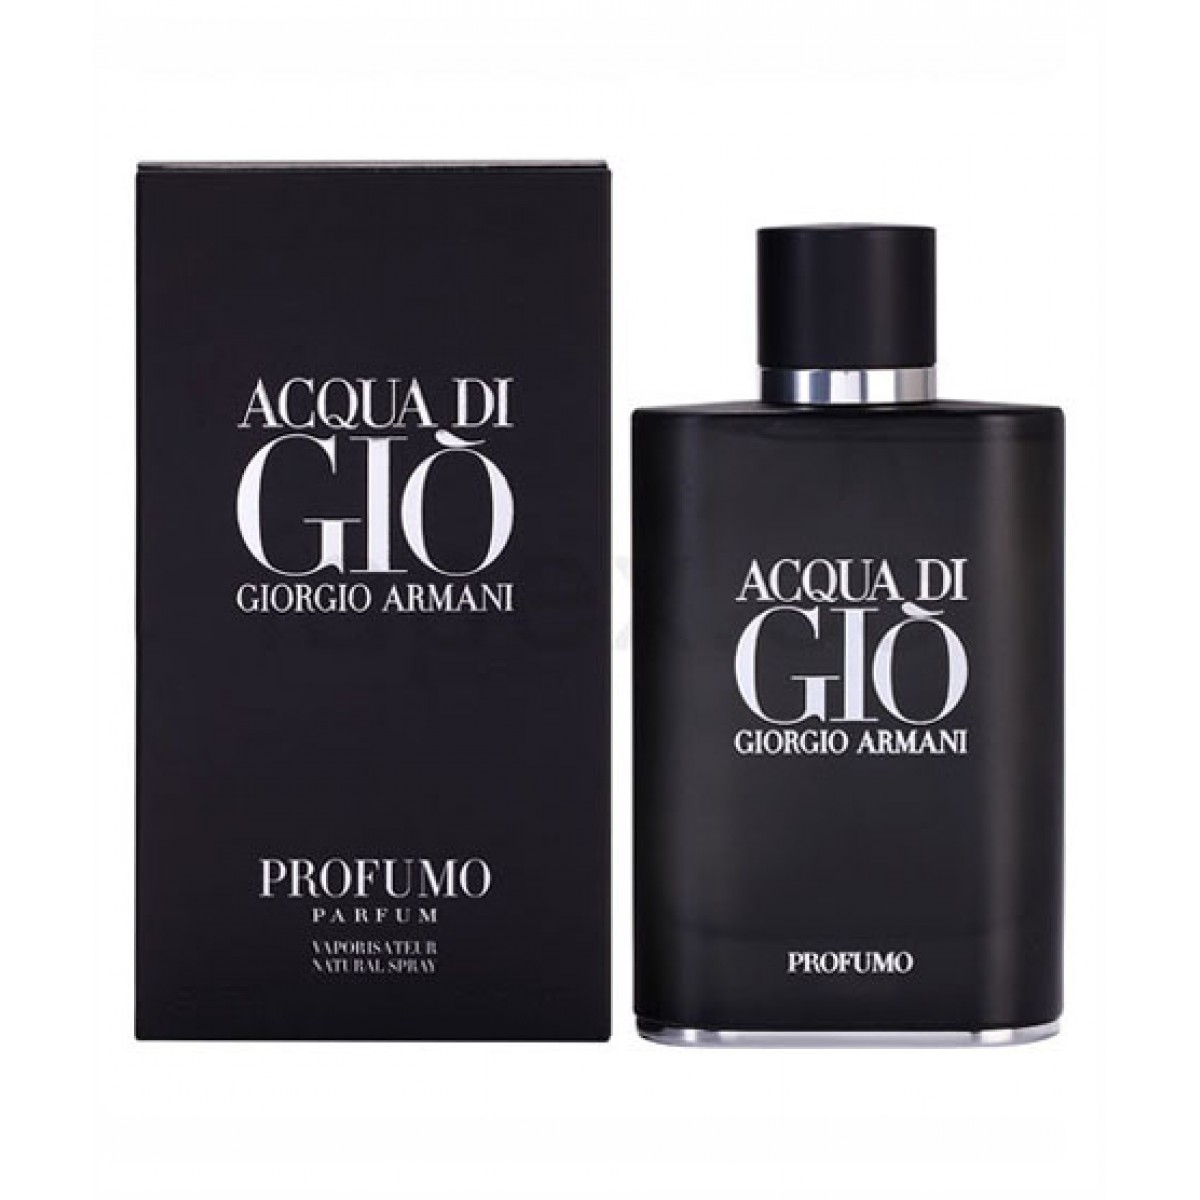 Nước hoa Acqua di Giò Profumo Parfum 125ml